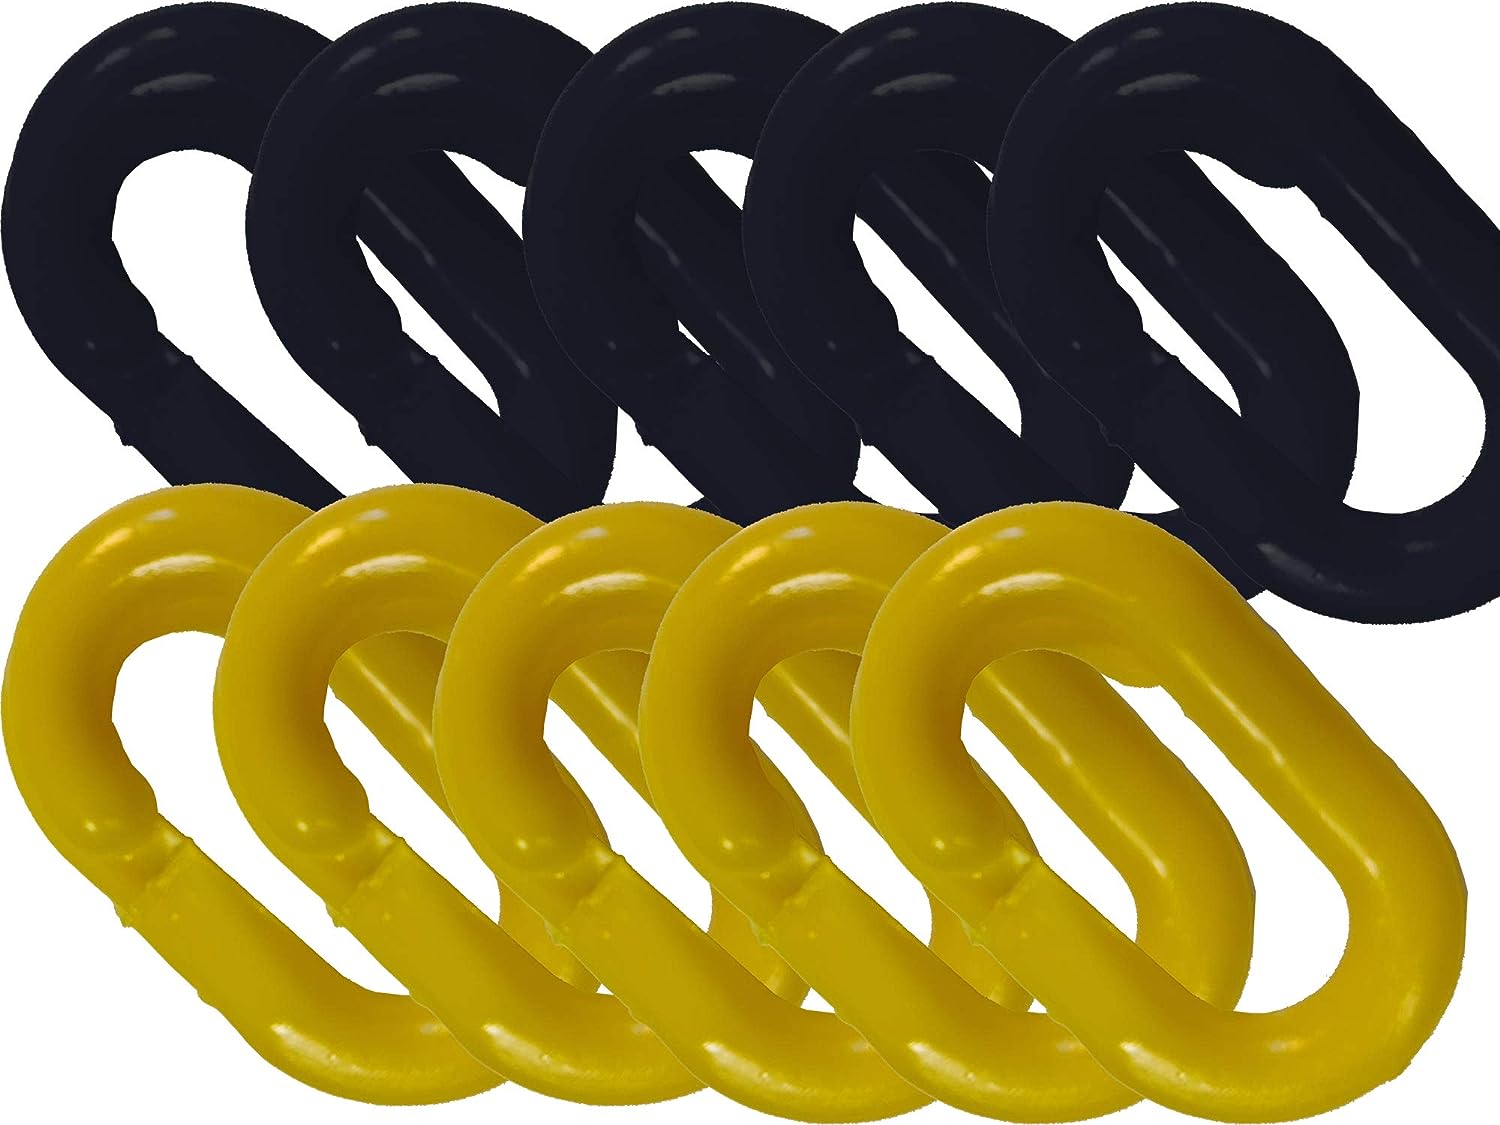 UvV Absperrketten Notglieder 10er Set, Reparatur und Verbindungsglieder aus Kunststoff in vielen Farben und Größen / 6 mm / gelb + schwarz